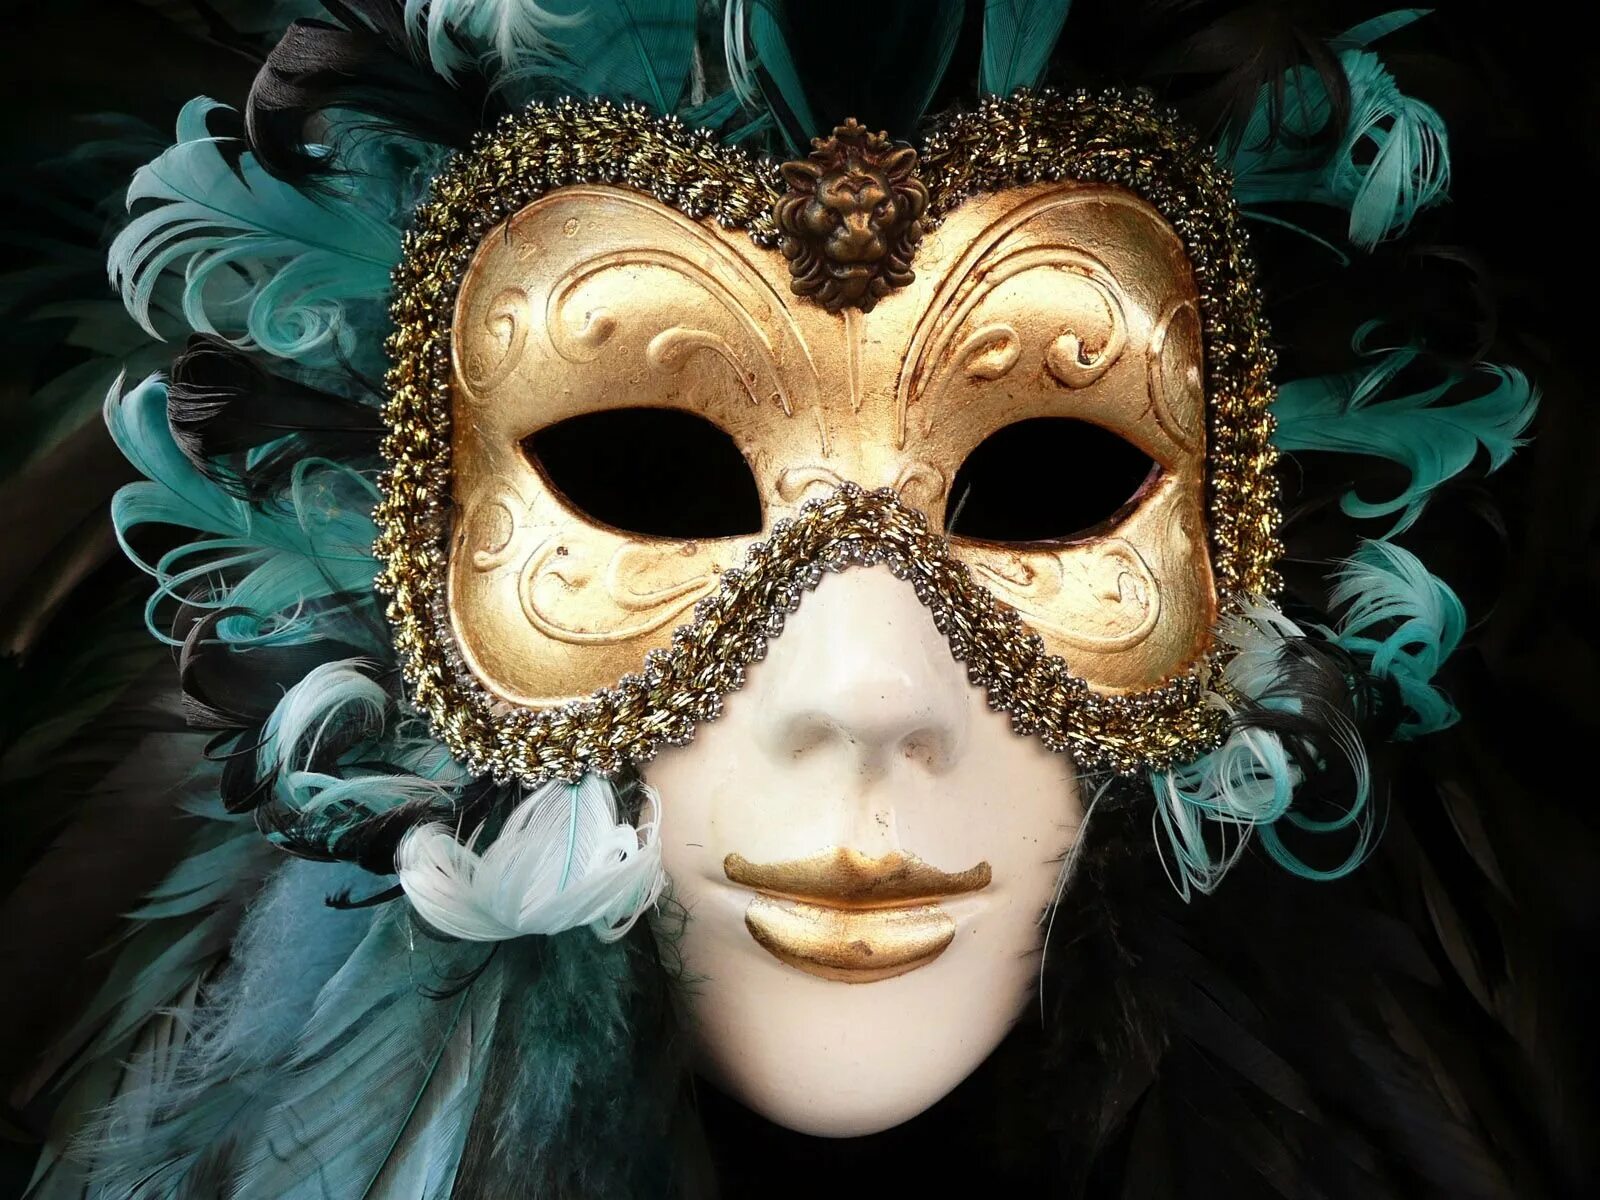 Понравилась маска. Джузеппе Верди "бал-маскарад". Венецианская маска Вольтер. Венецианская маска Арлекино. Венецианский карнавал Коломбина.